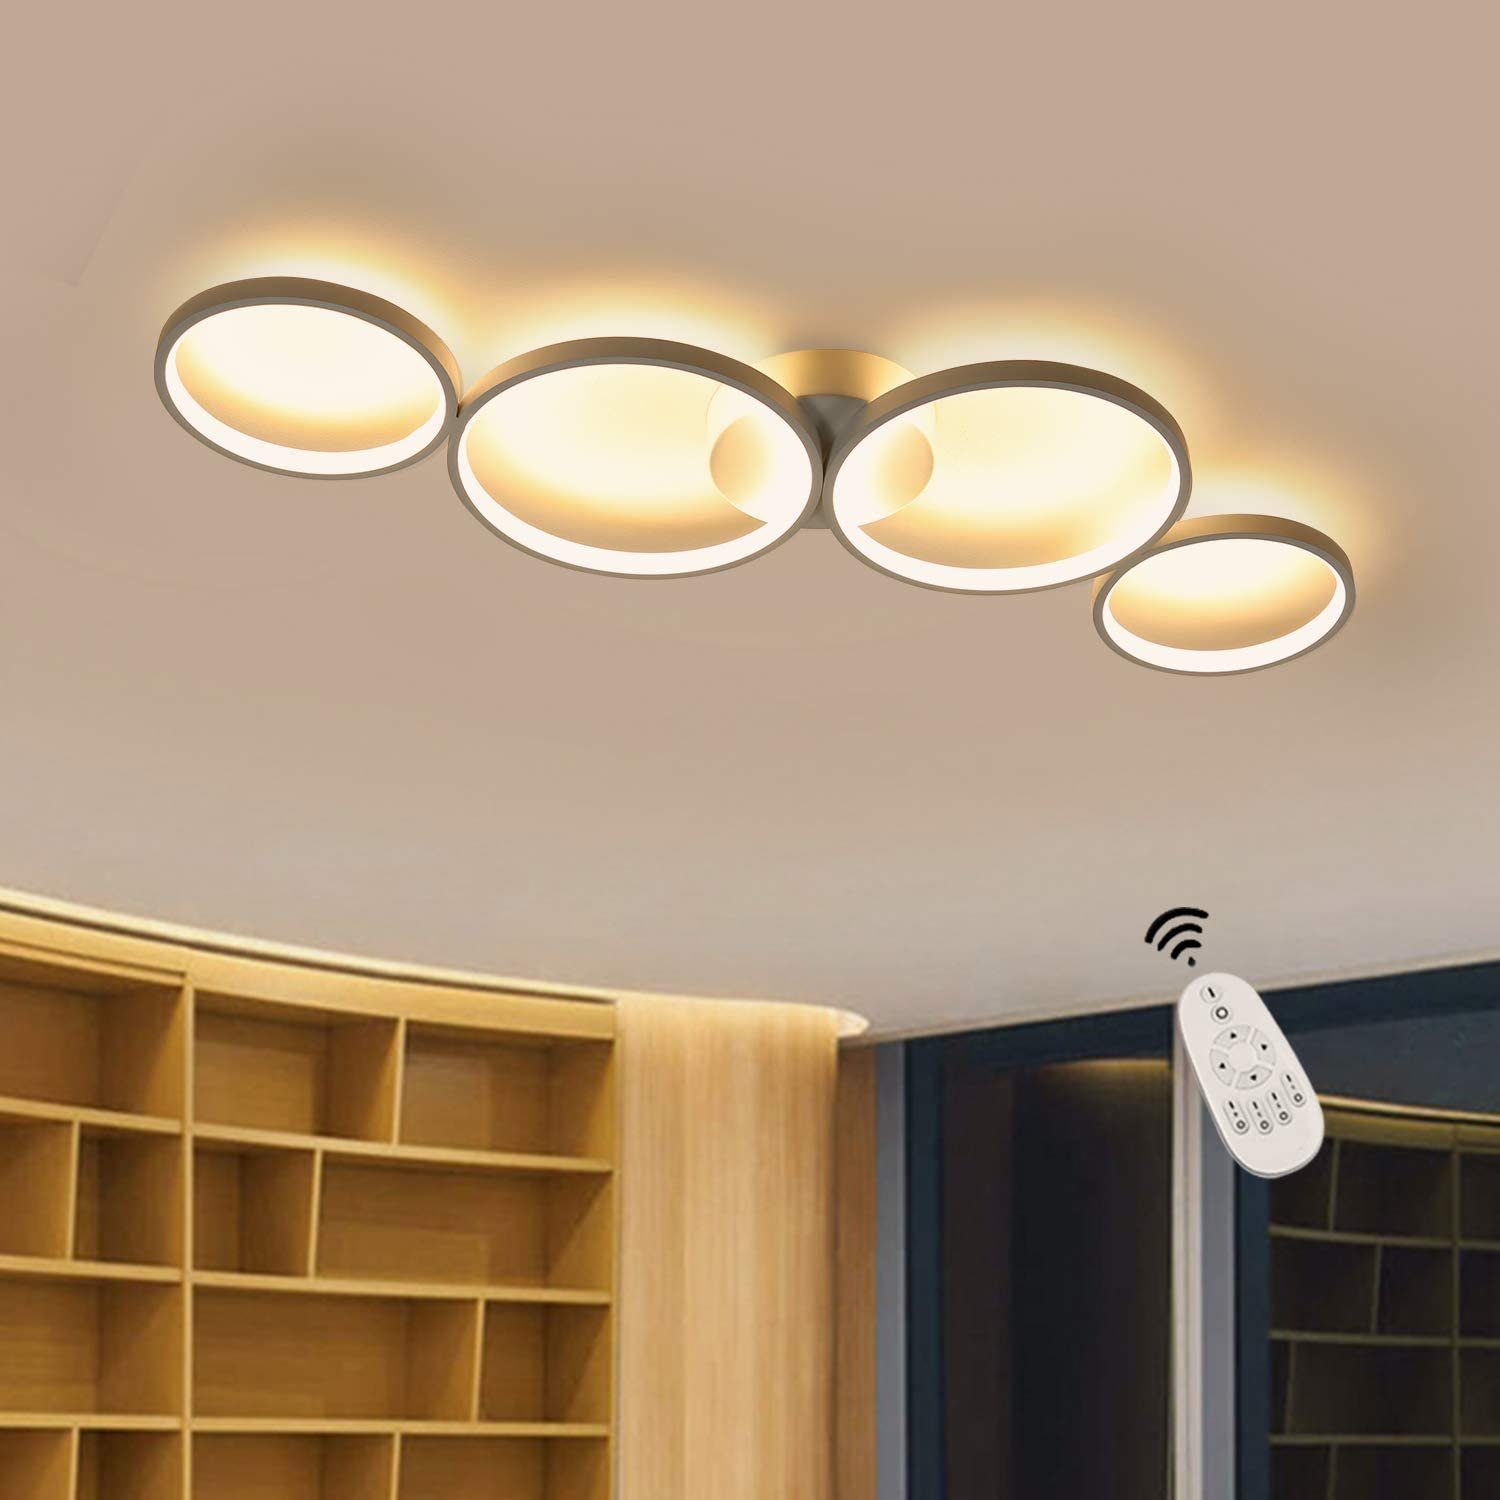 LED Decken Beleuchtung dimmbar Wohn Schlaf Zimmer Lampe Leuchte drehbar Up&Down 